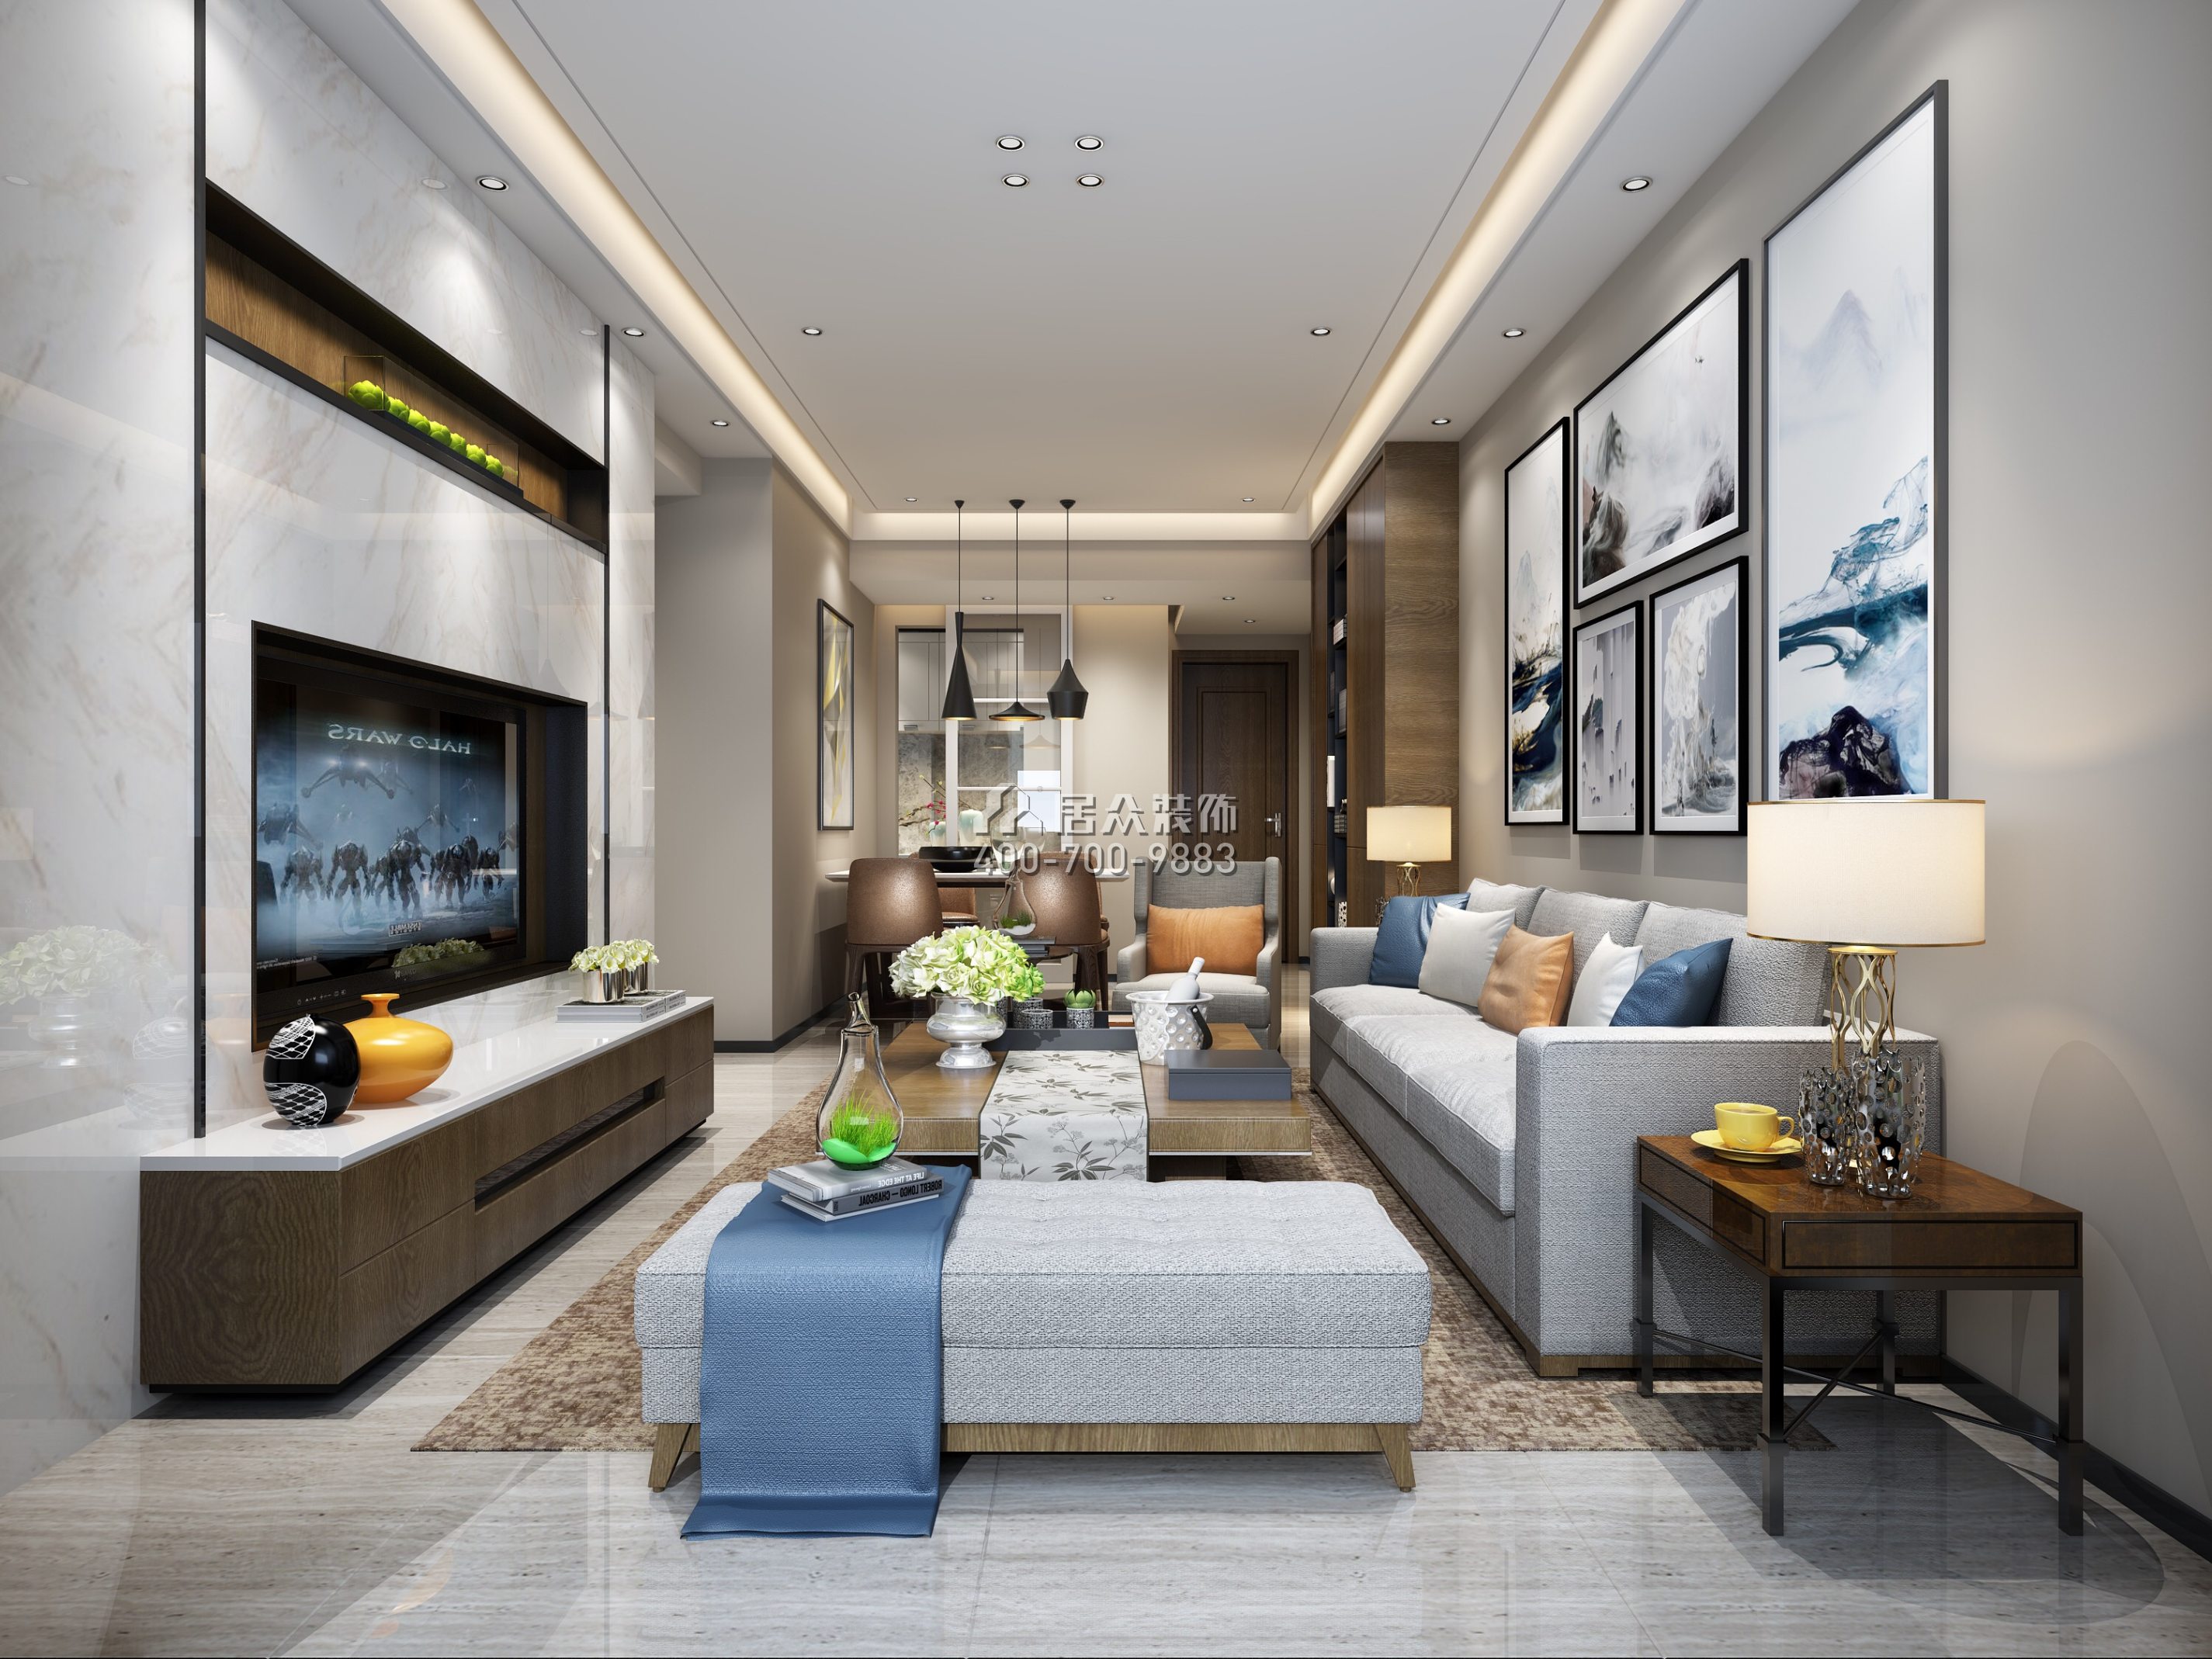 華潤城一期88平方米現代簡約風格平層戶型客廳裝修效果圖